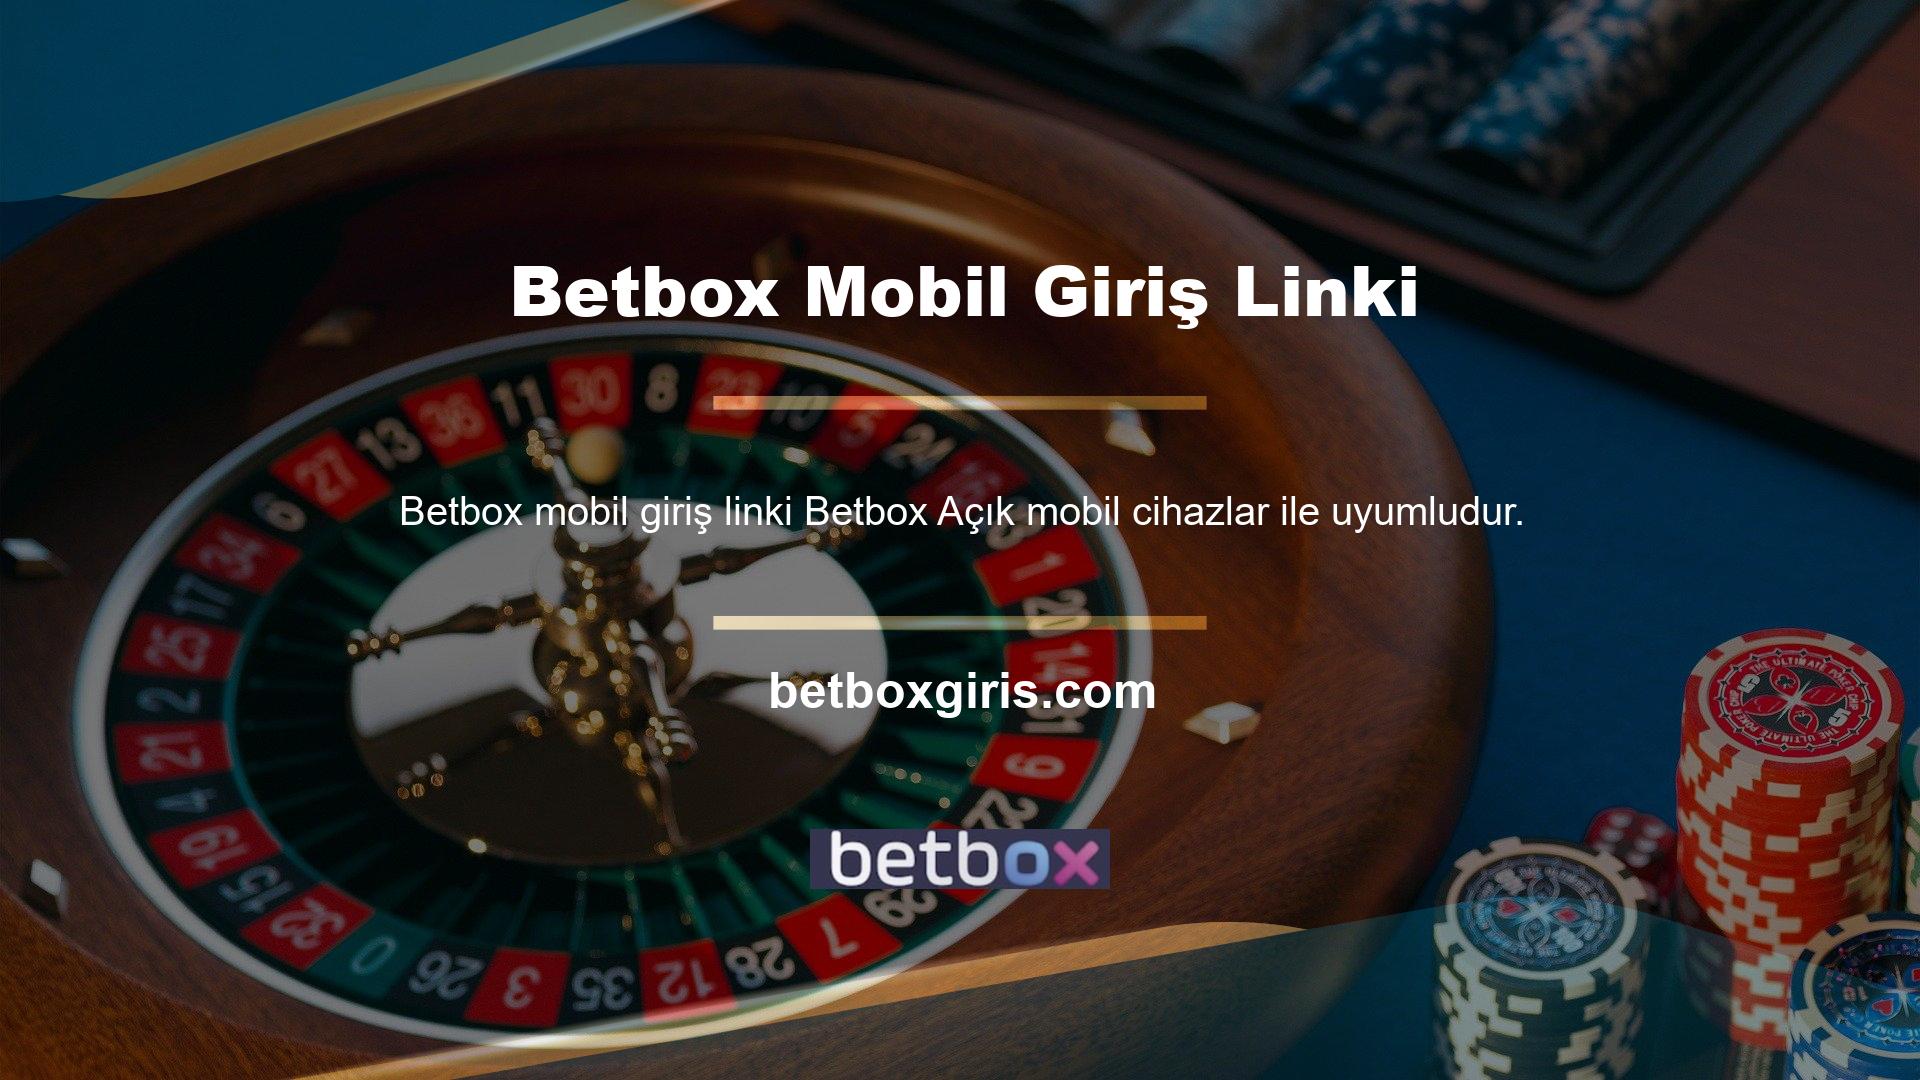 Sitenin sosyal medya hesaplarında paylaşılan Betbox giriş URL'si, mobil cihazların Android ve iOS sürümleriyle uyumludur